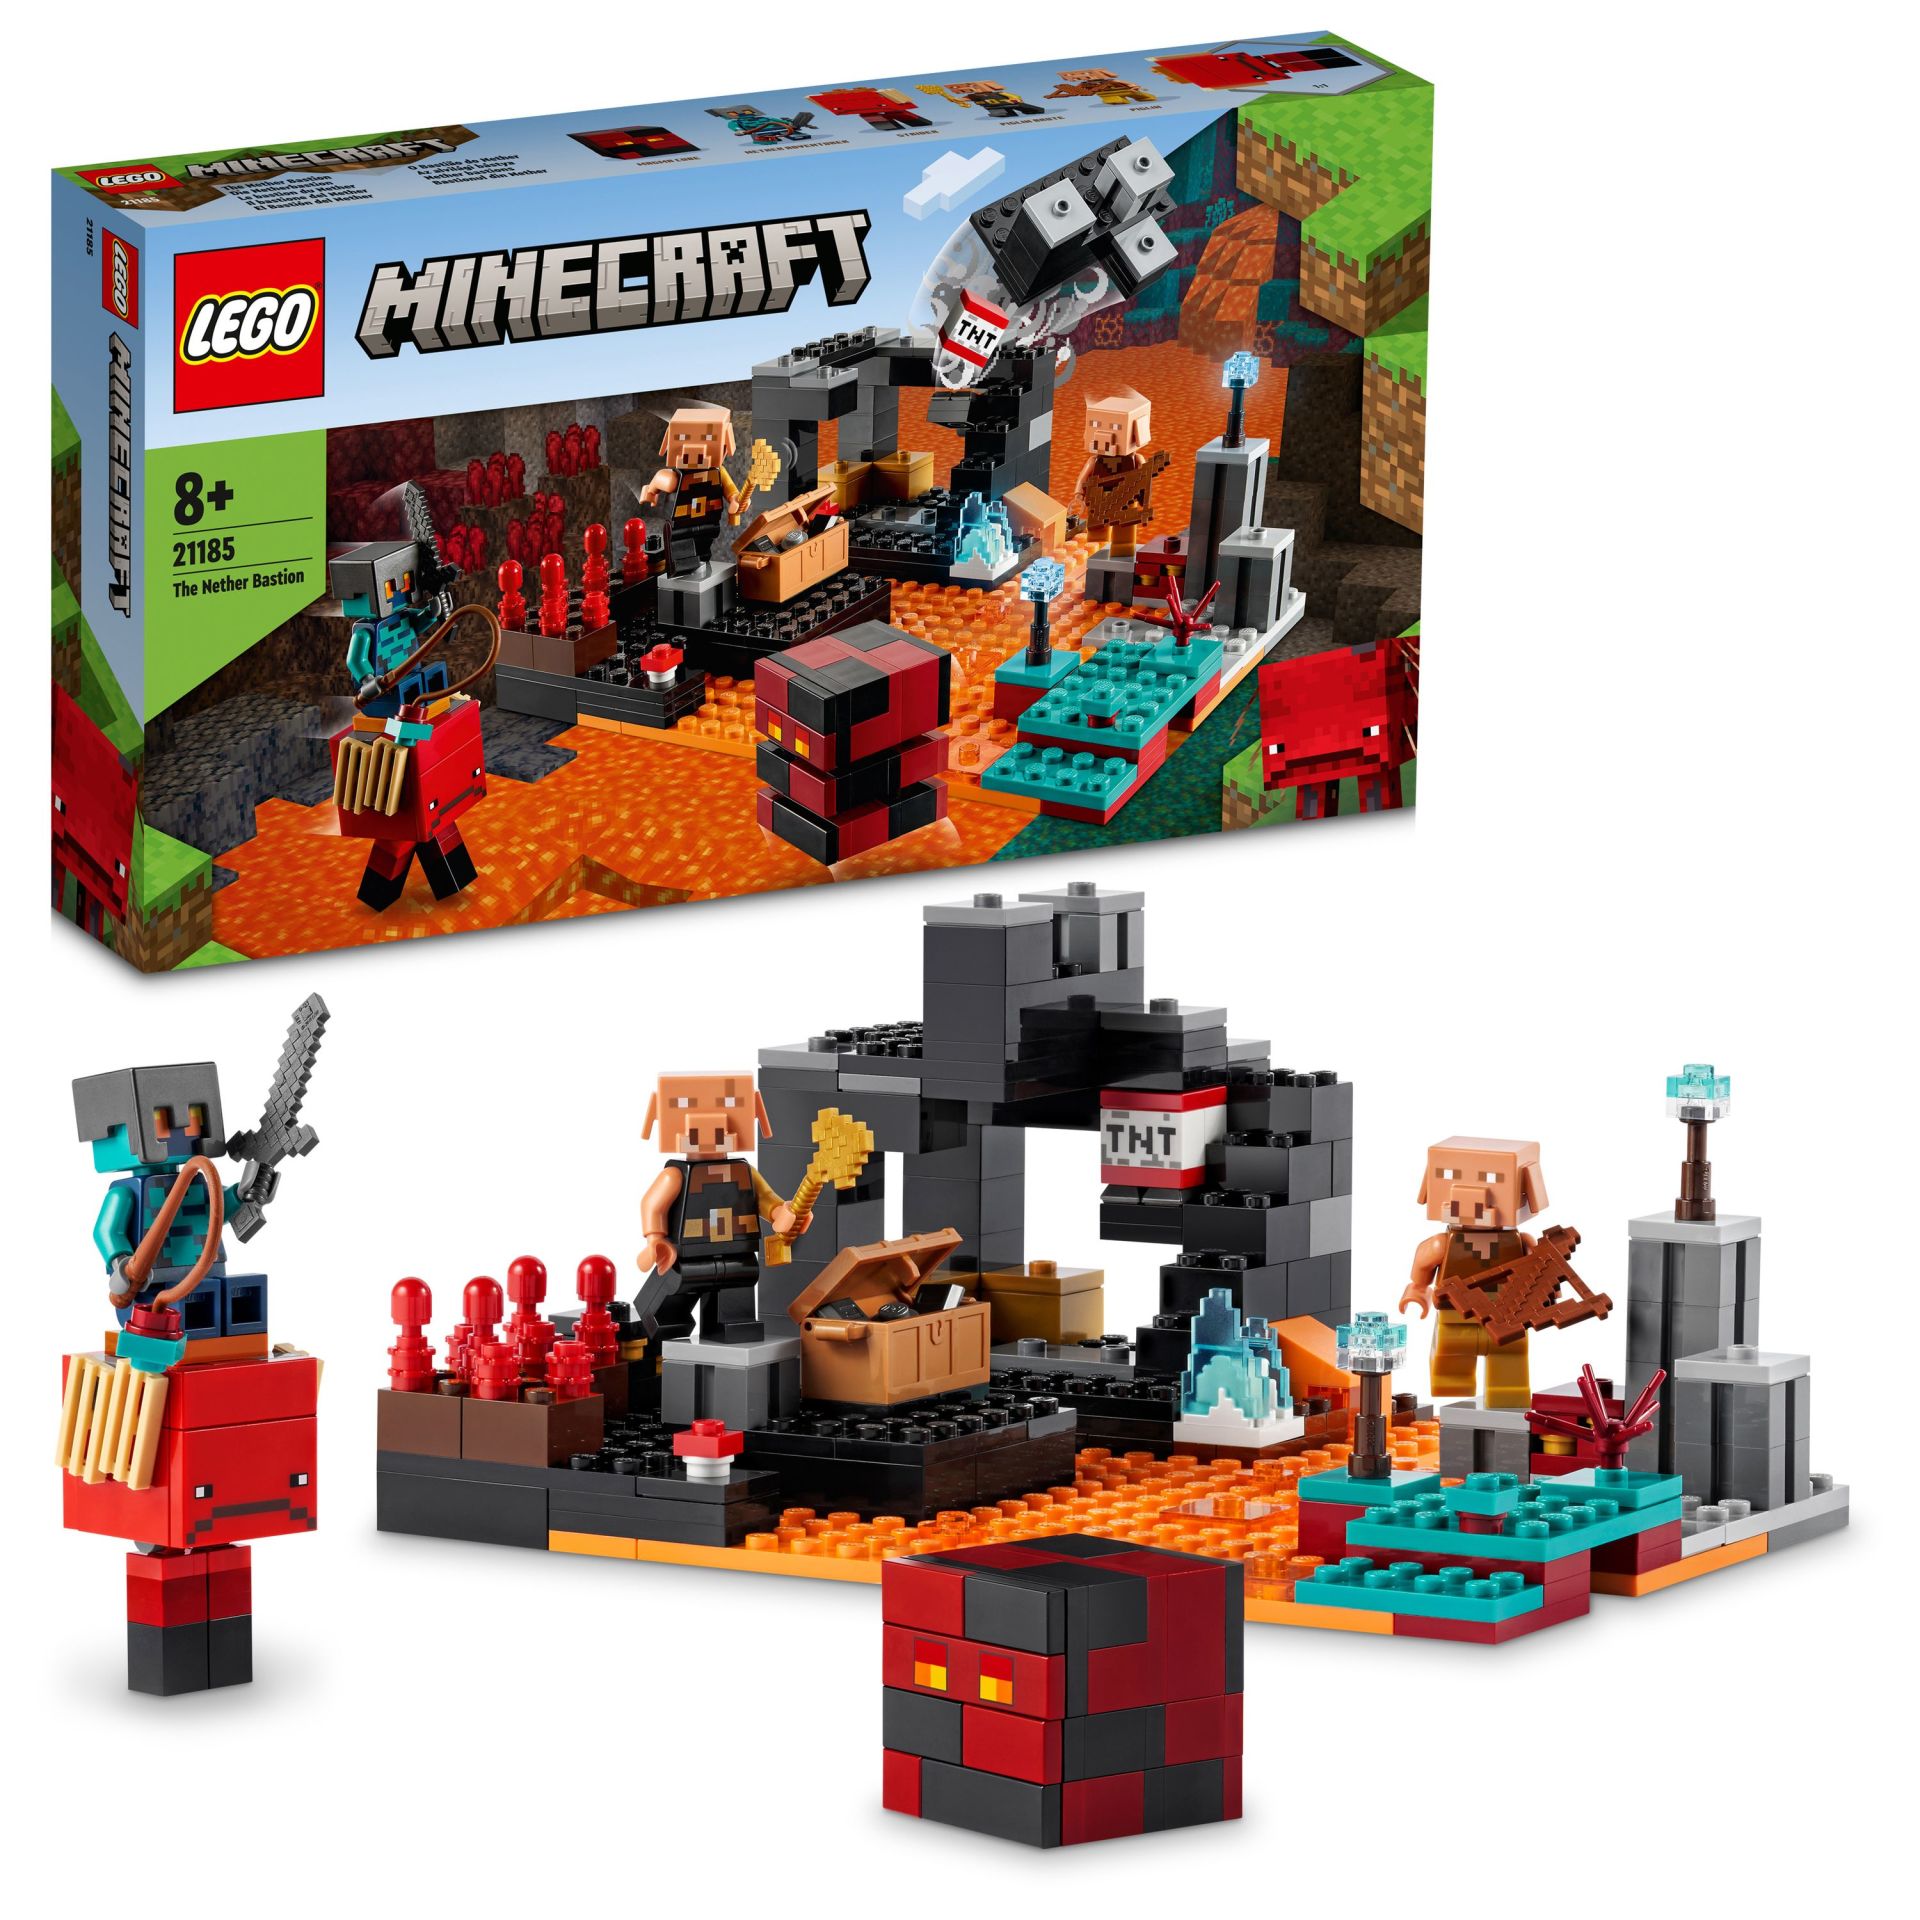 LEGO® Minecraft® Nether Burcu 21185 - 8 Yaş ve Üzeri Çocuklar için Patlayıcı Savaş Aksiyonlu Oyuncak Yapım Seti (300 Parça)